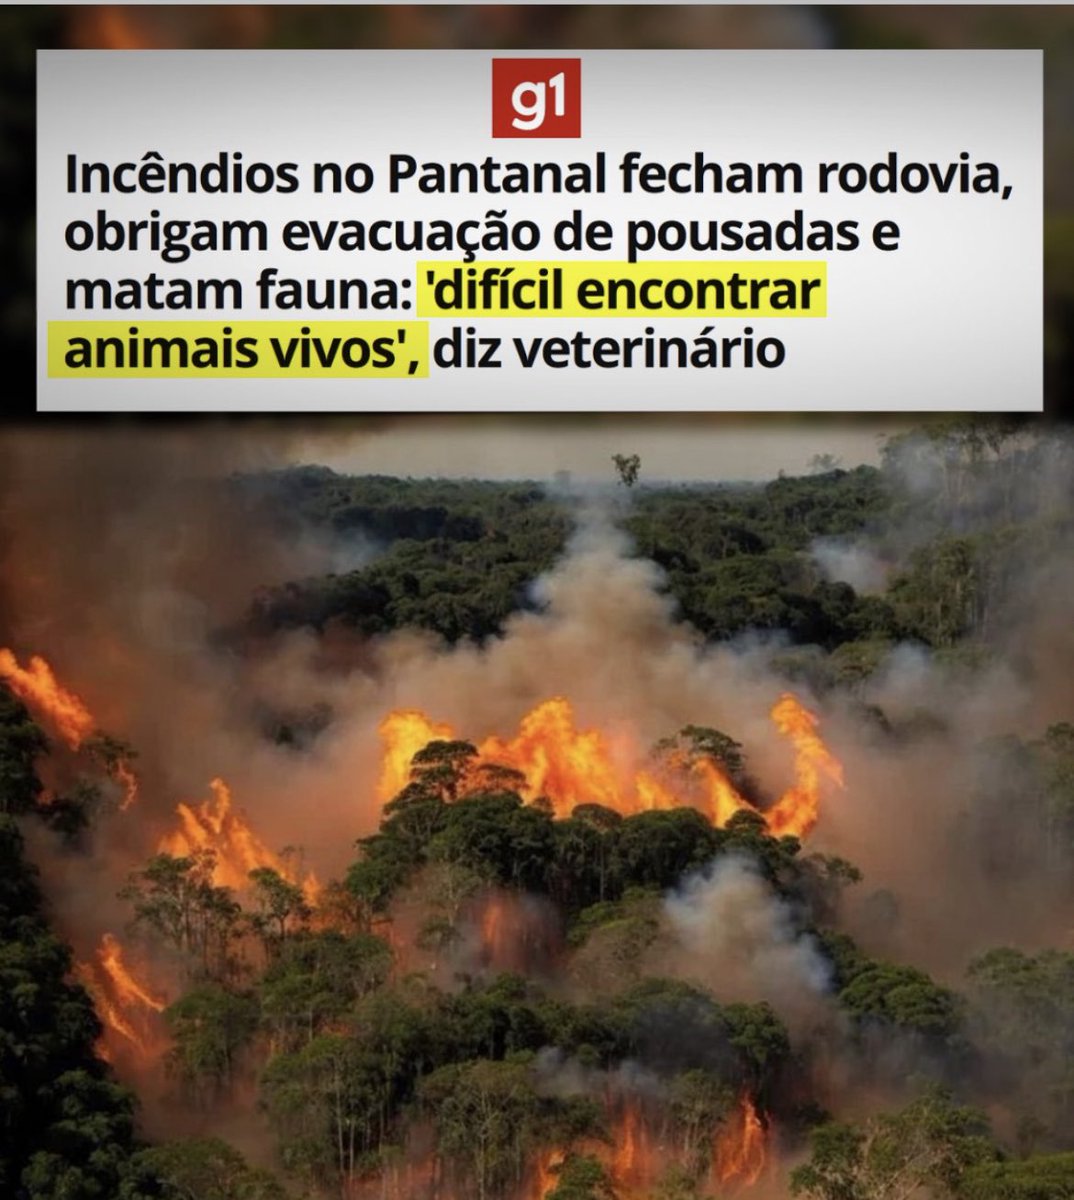 Gente… que tristeza isto…. Os animais, as plantas…. que horror… O Brasil literalmente pegando fogo! Cade nosso pessoal pra  cobrar da gangue  que tomou o poder? #ForaLulaeSuaQuadrilha 

#SOSPantanal